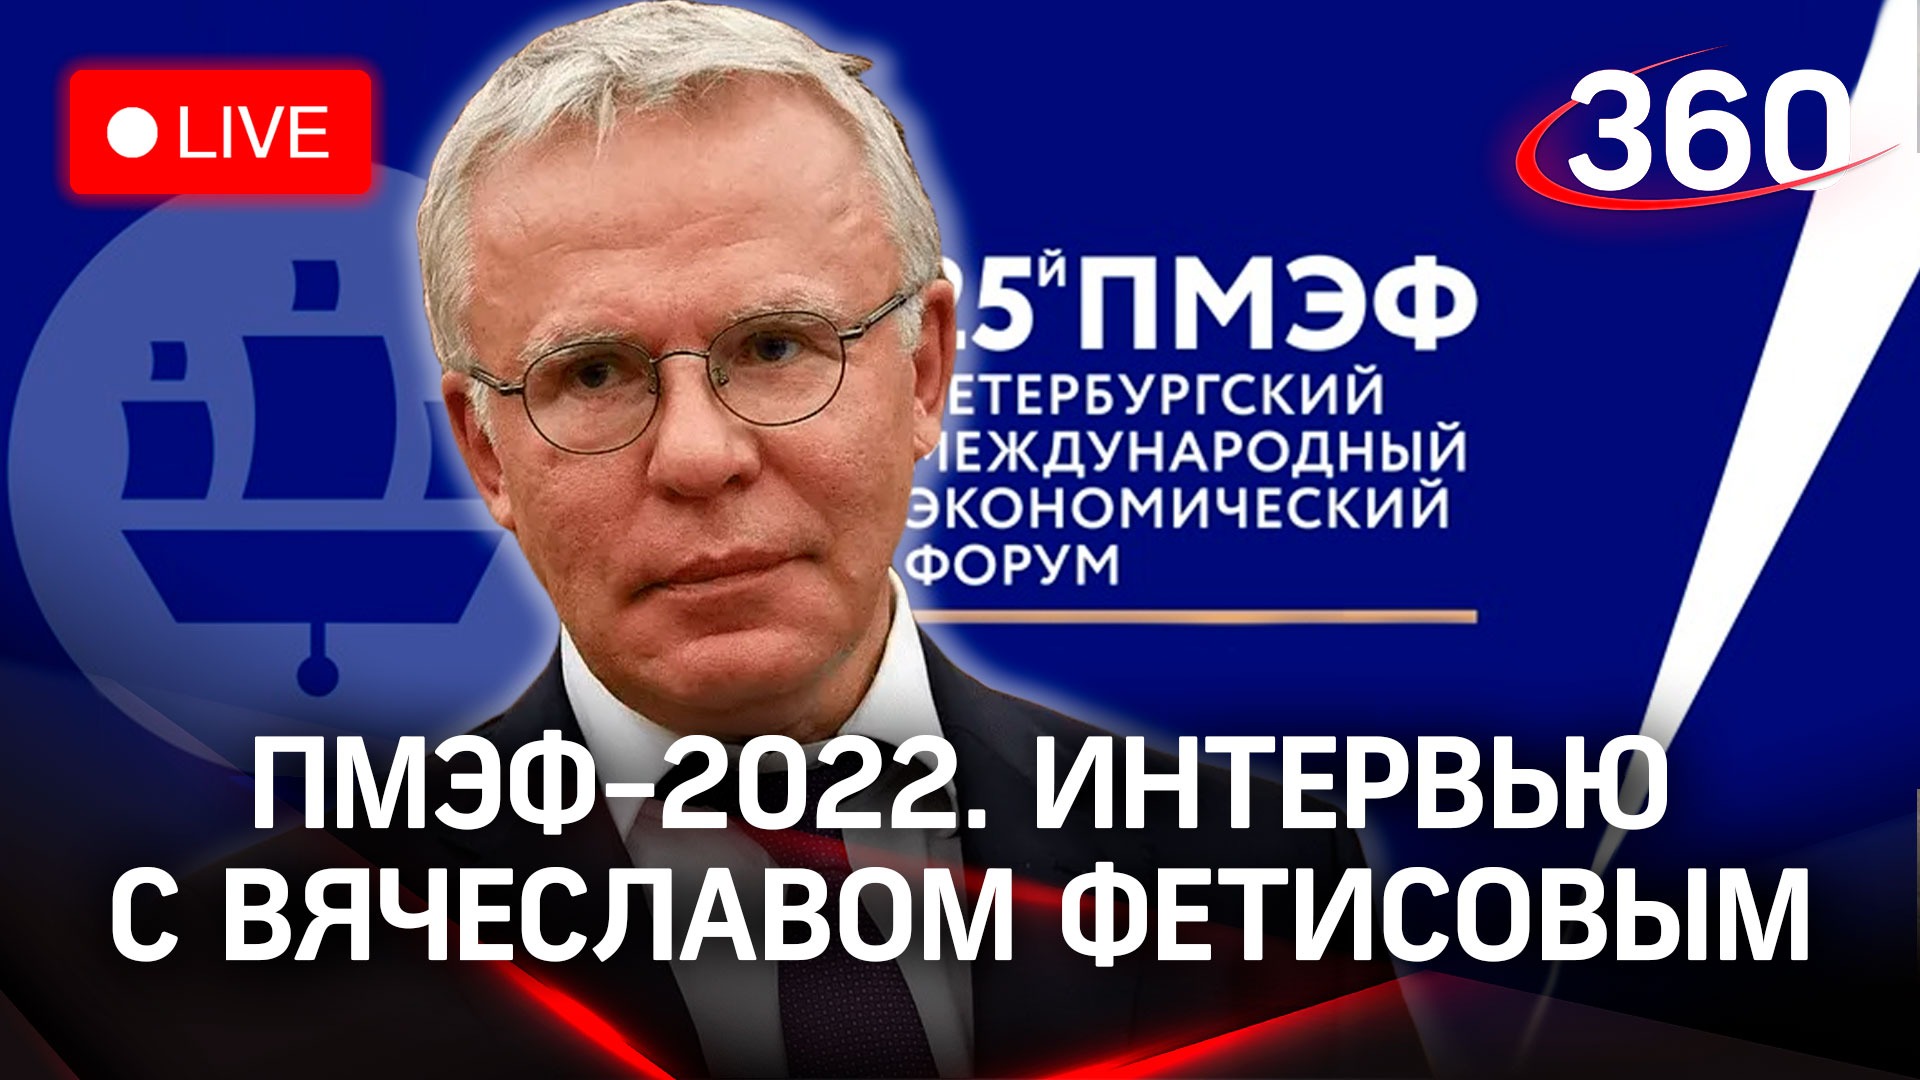 ПМЭФ-2022: интервью с Вячеславом Фетисовым, депутатом Государственной думы и послом доброй воли